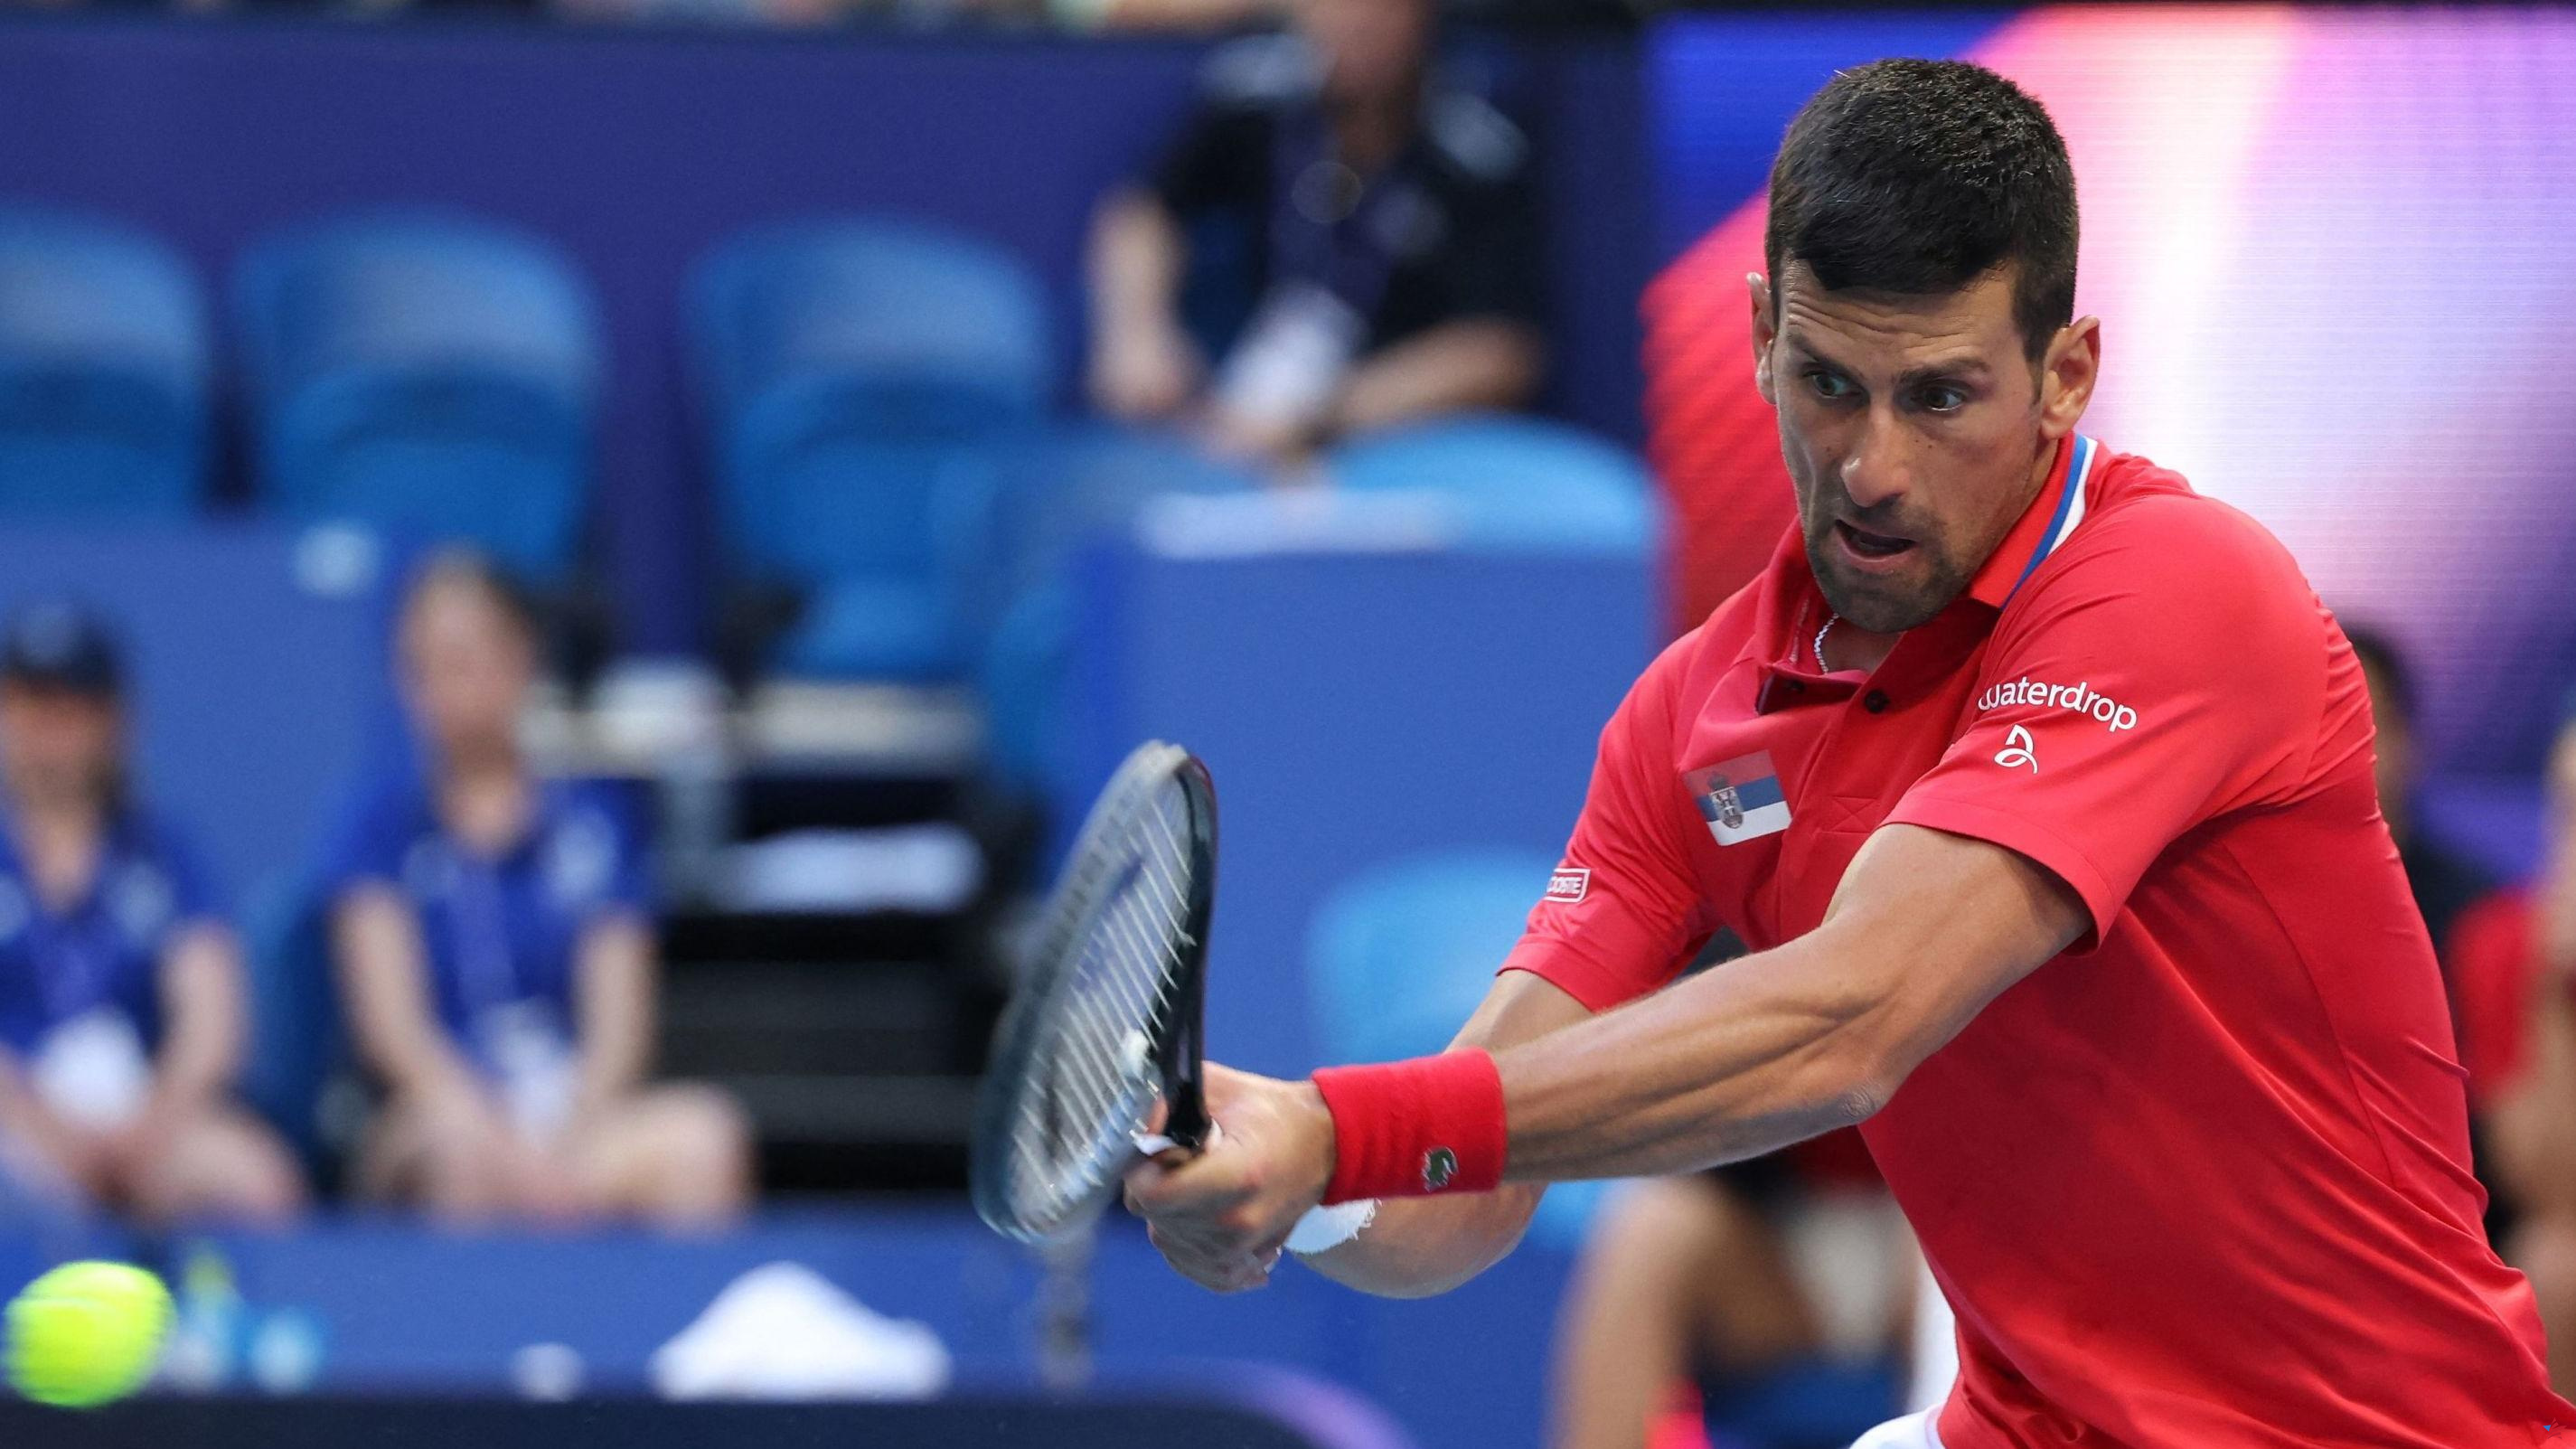 Tenis: Djokovic derrotado tras 43 victorias consecutivas en Australia